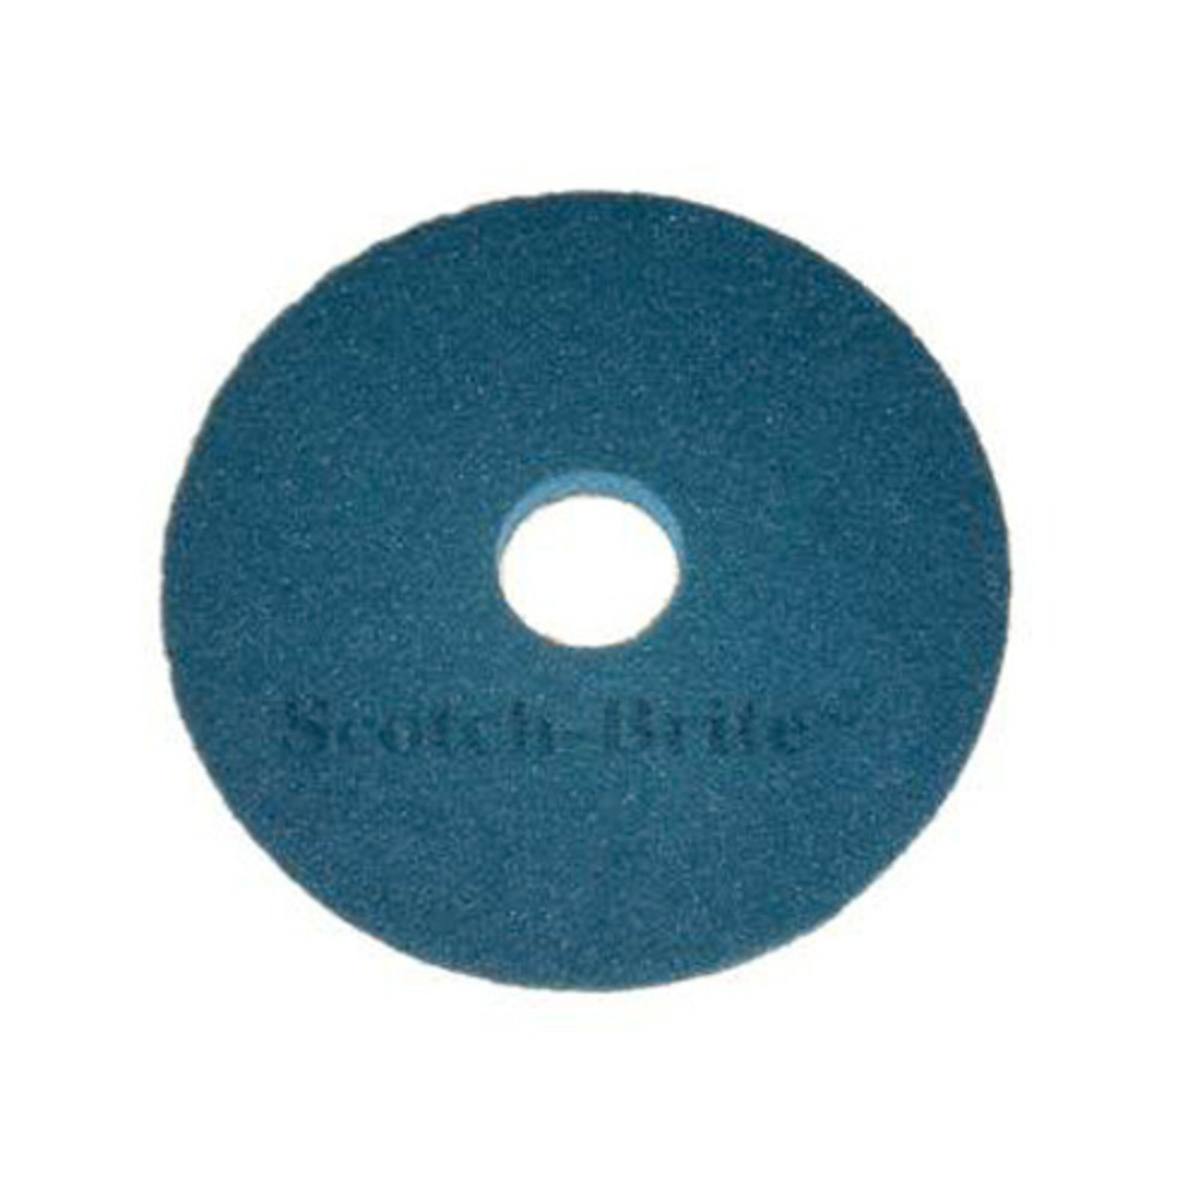 3M Scotch-Brite Superpad, Blau, 432 mm